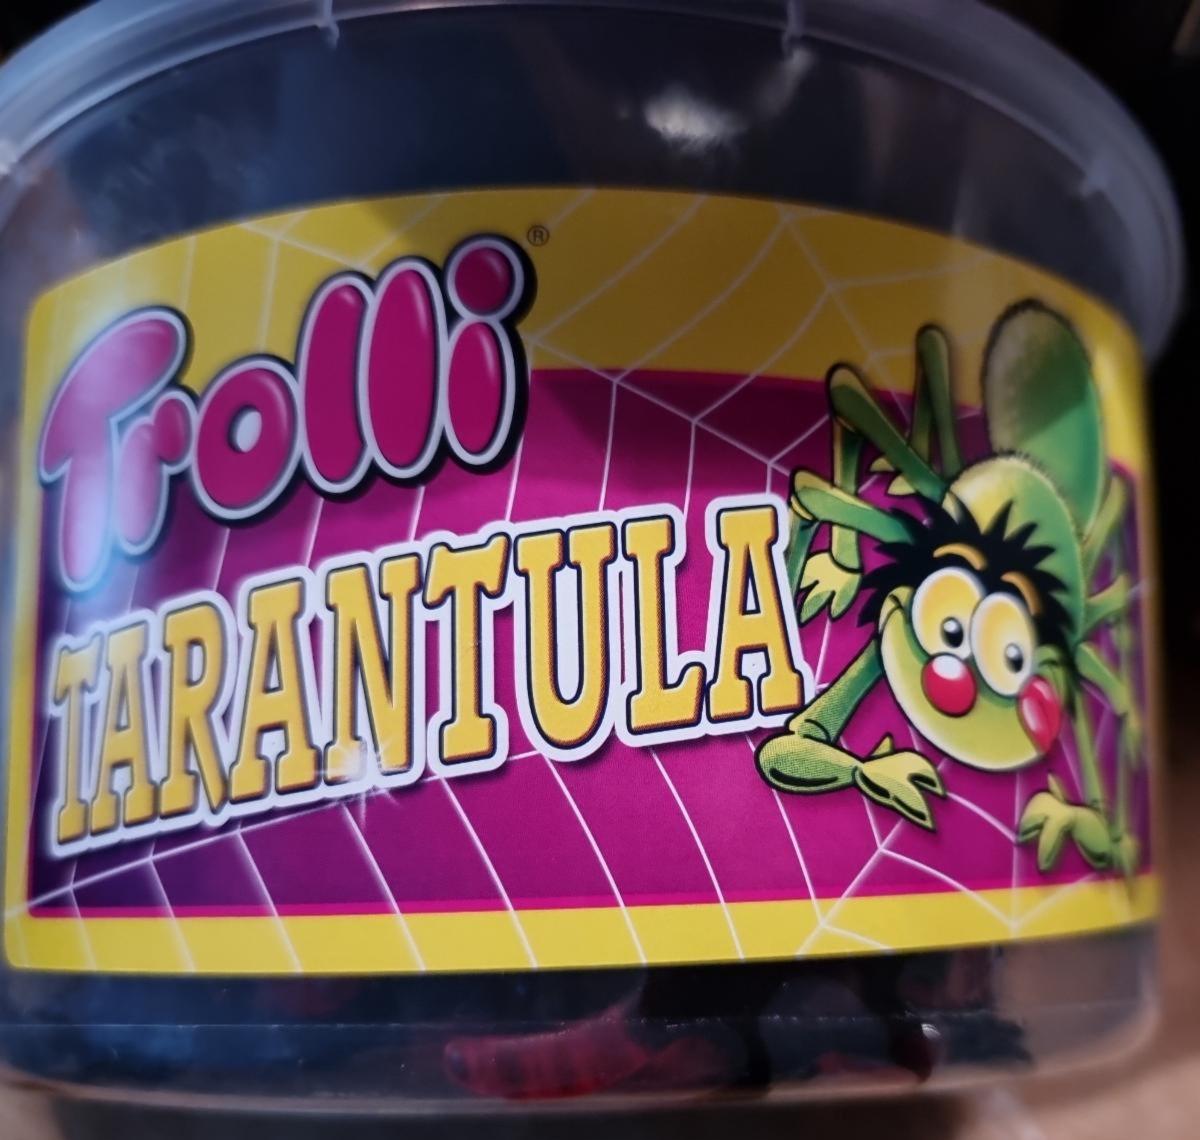 Фото - Цукерки жувальні фруктові Tarantula Trolli